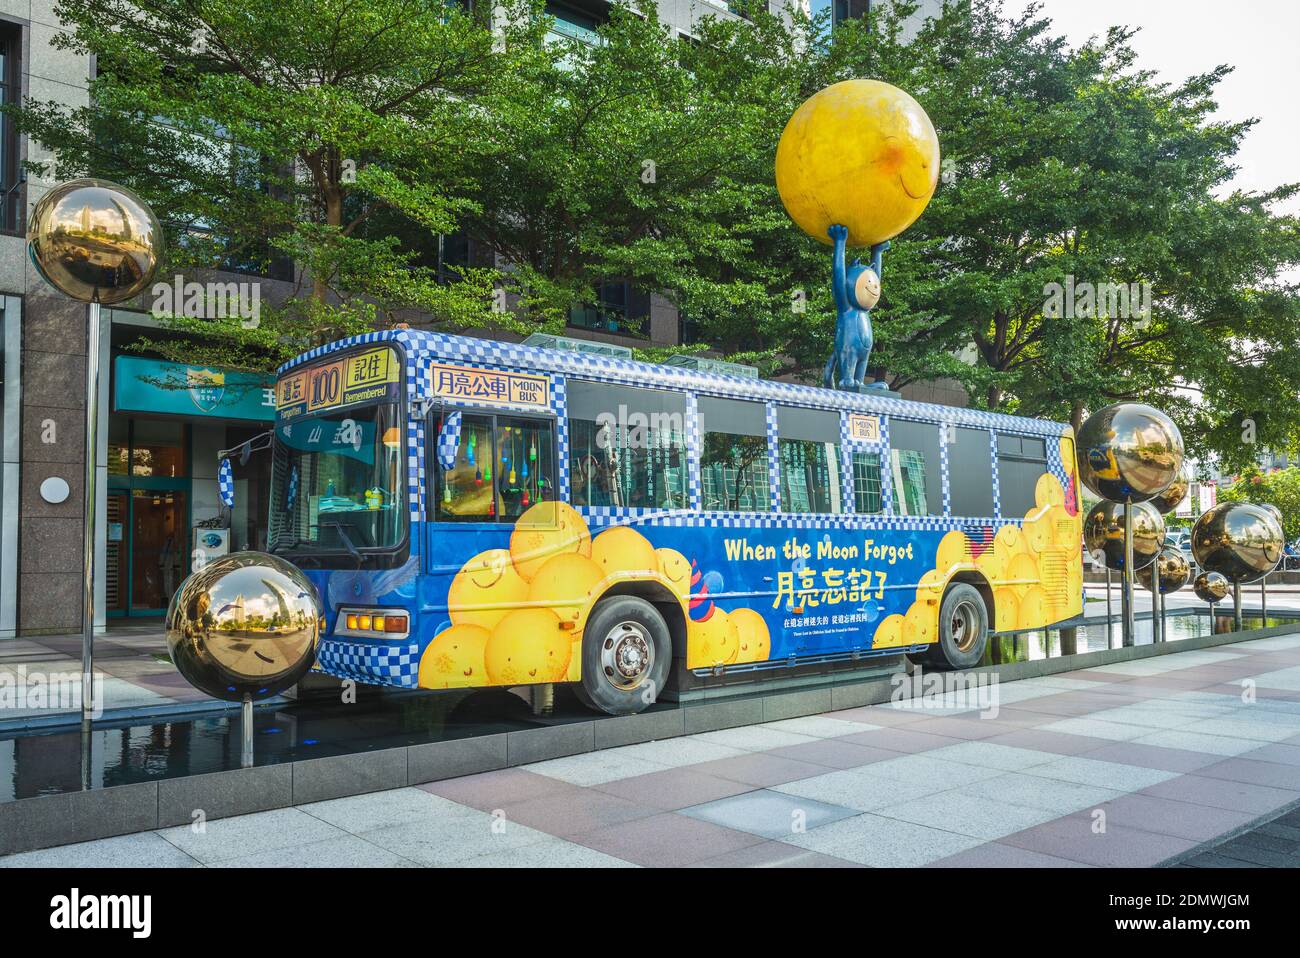 1 novembre 2020: L'autobus lunare si trova vicino all'edificio taipei 101 nel quartiere xinyi della città di taipei, taiwan. Era basato sull'illustratore taiwanese Jimmy Foto Stock